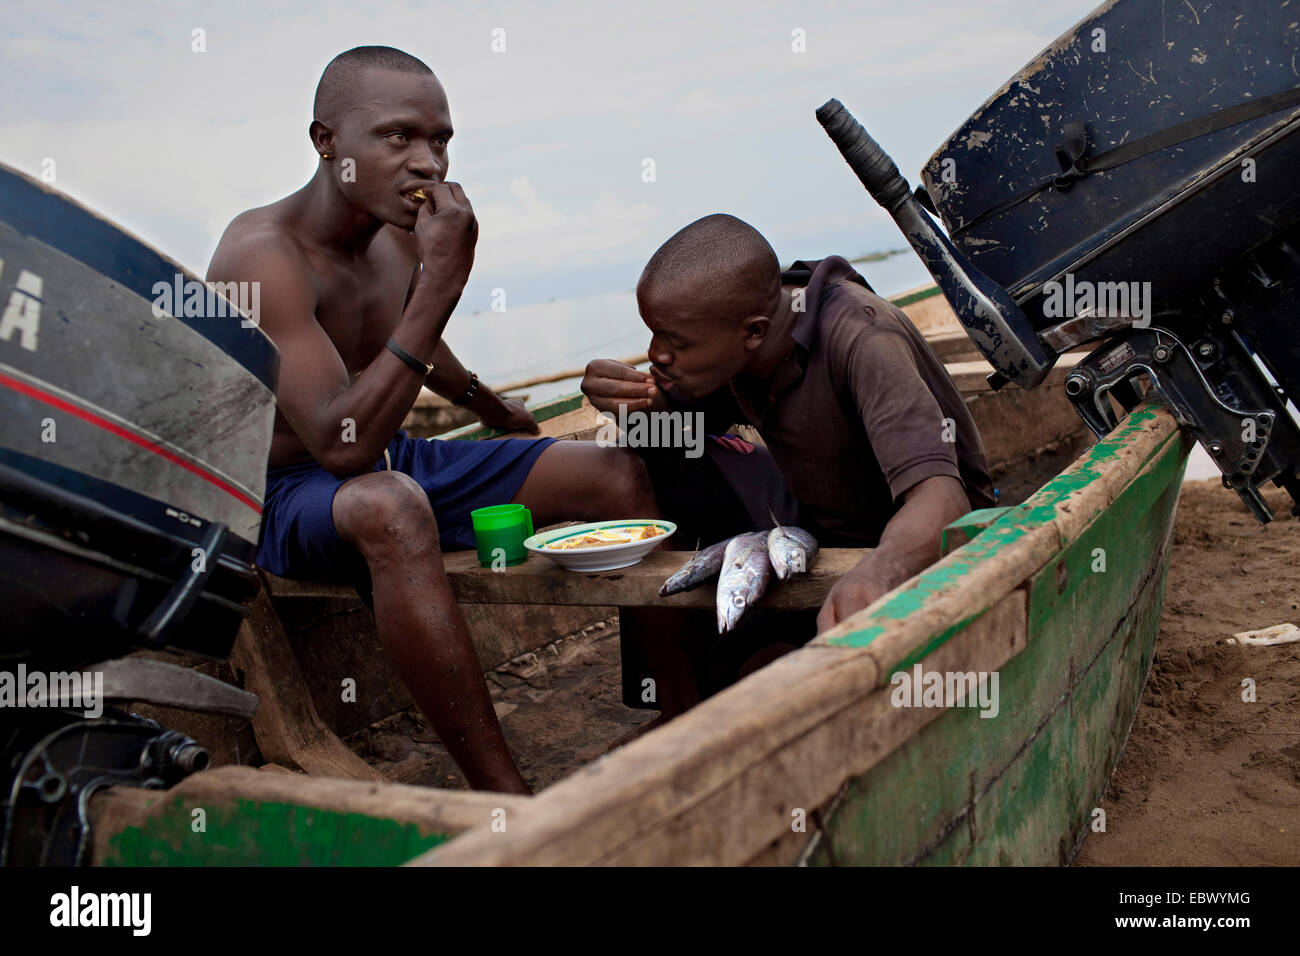 junge Fischer sitzen in einem Boot auf dem Sandstrand nehmen ihr Frühstück nach einer durchzechten Nacht Arbeit, Burundi, Nyanza Lac, Mvugo, Nyanza Lac Stockfoto